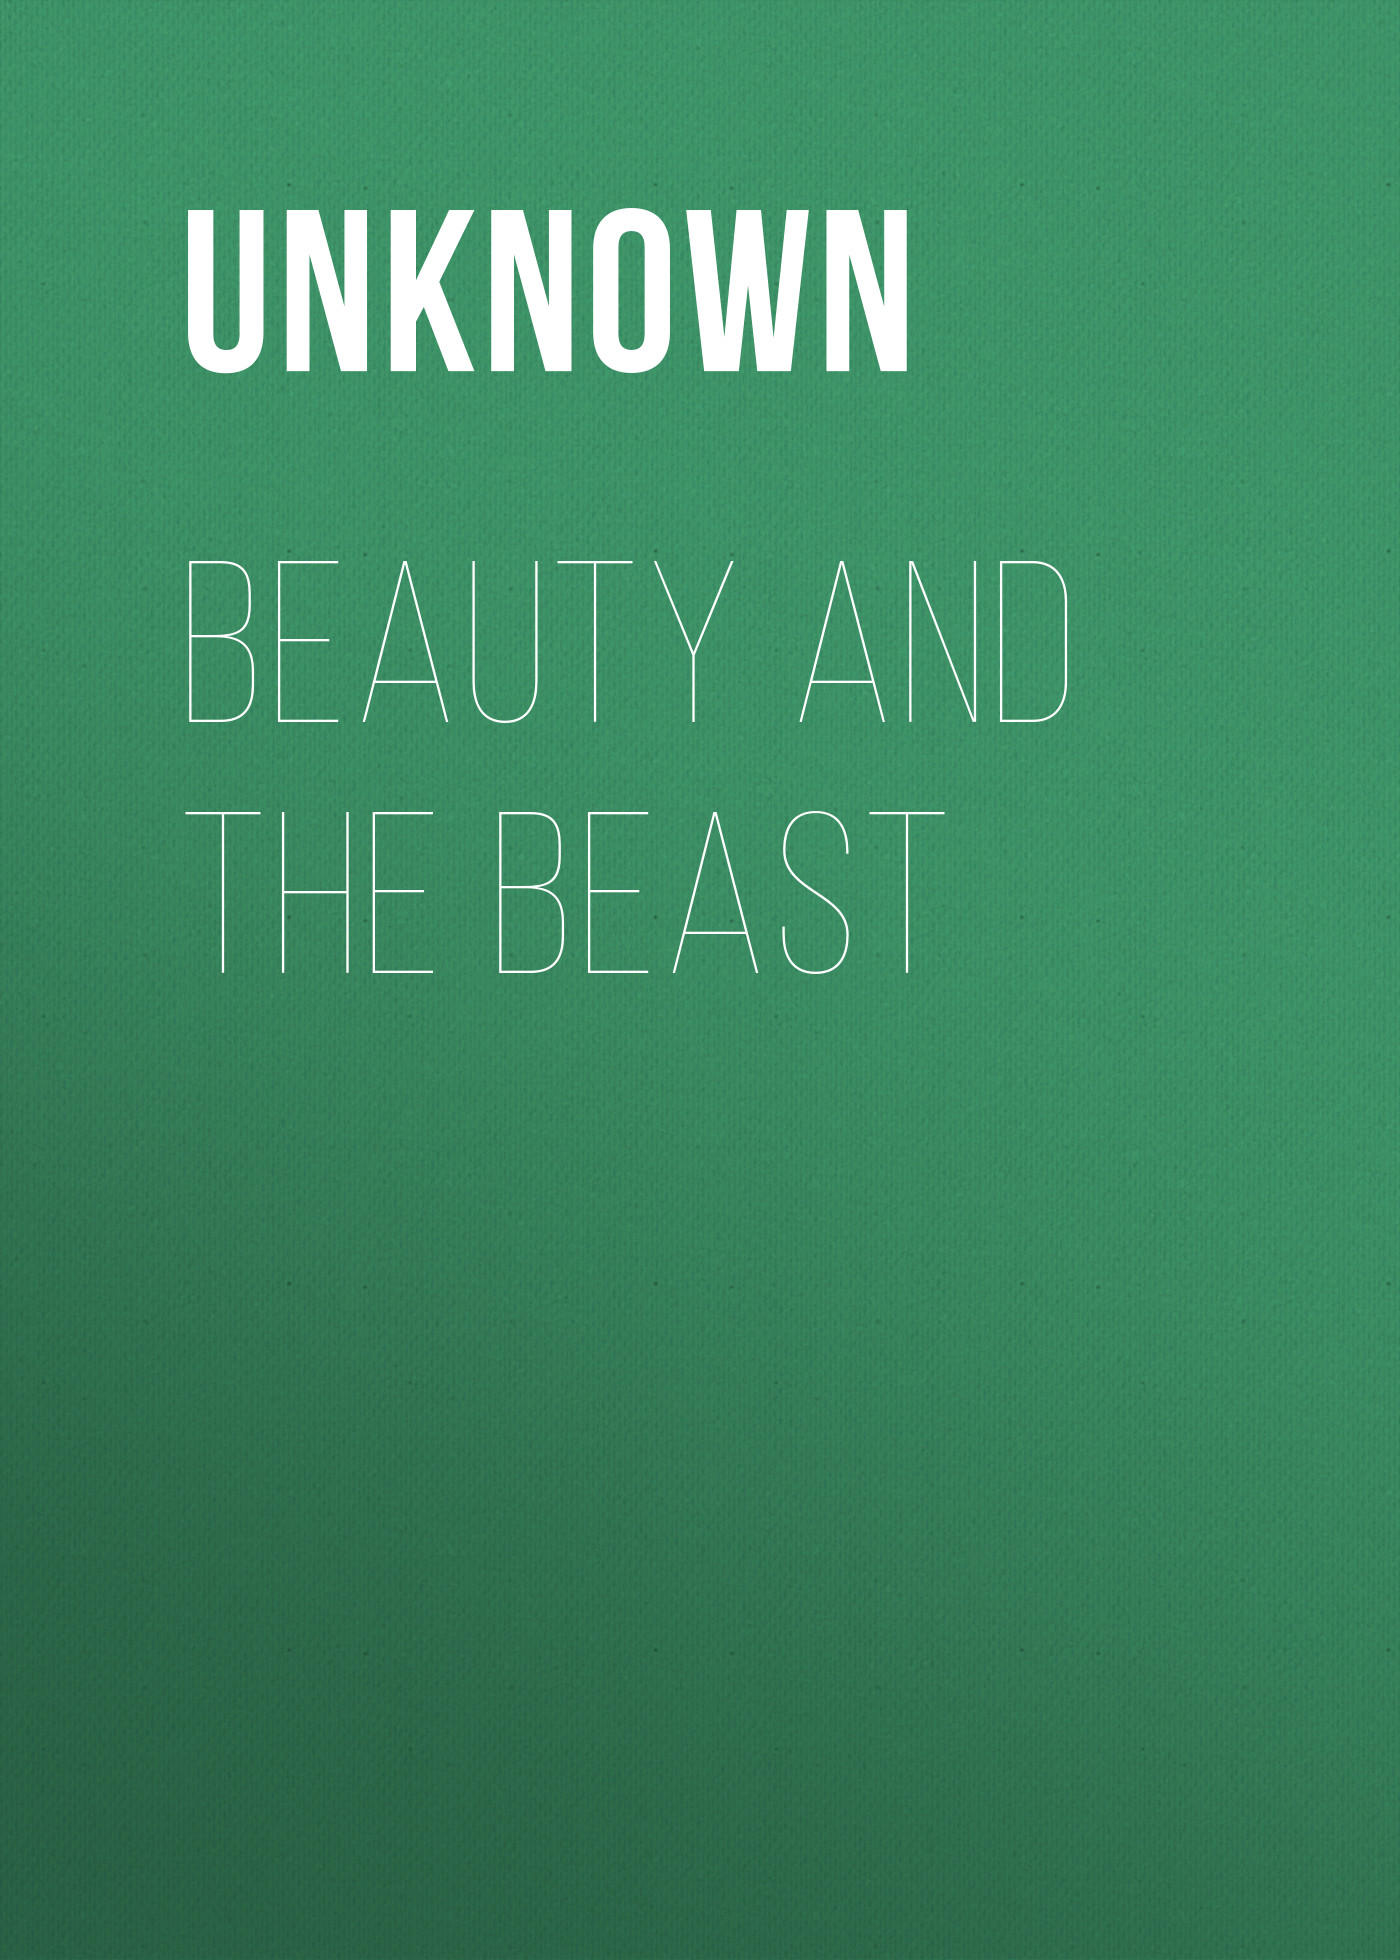 Книга Beauty and the Beast из серии , созданная Unknown Unknown, может относится к жанру Зарубежные детские книги, Зарубежная старинная литература, Зарубежная классика. Стоимость электронной книги Beauty and the Beast с идентификатором 35495135 составляет 0 руб.